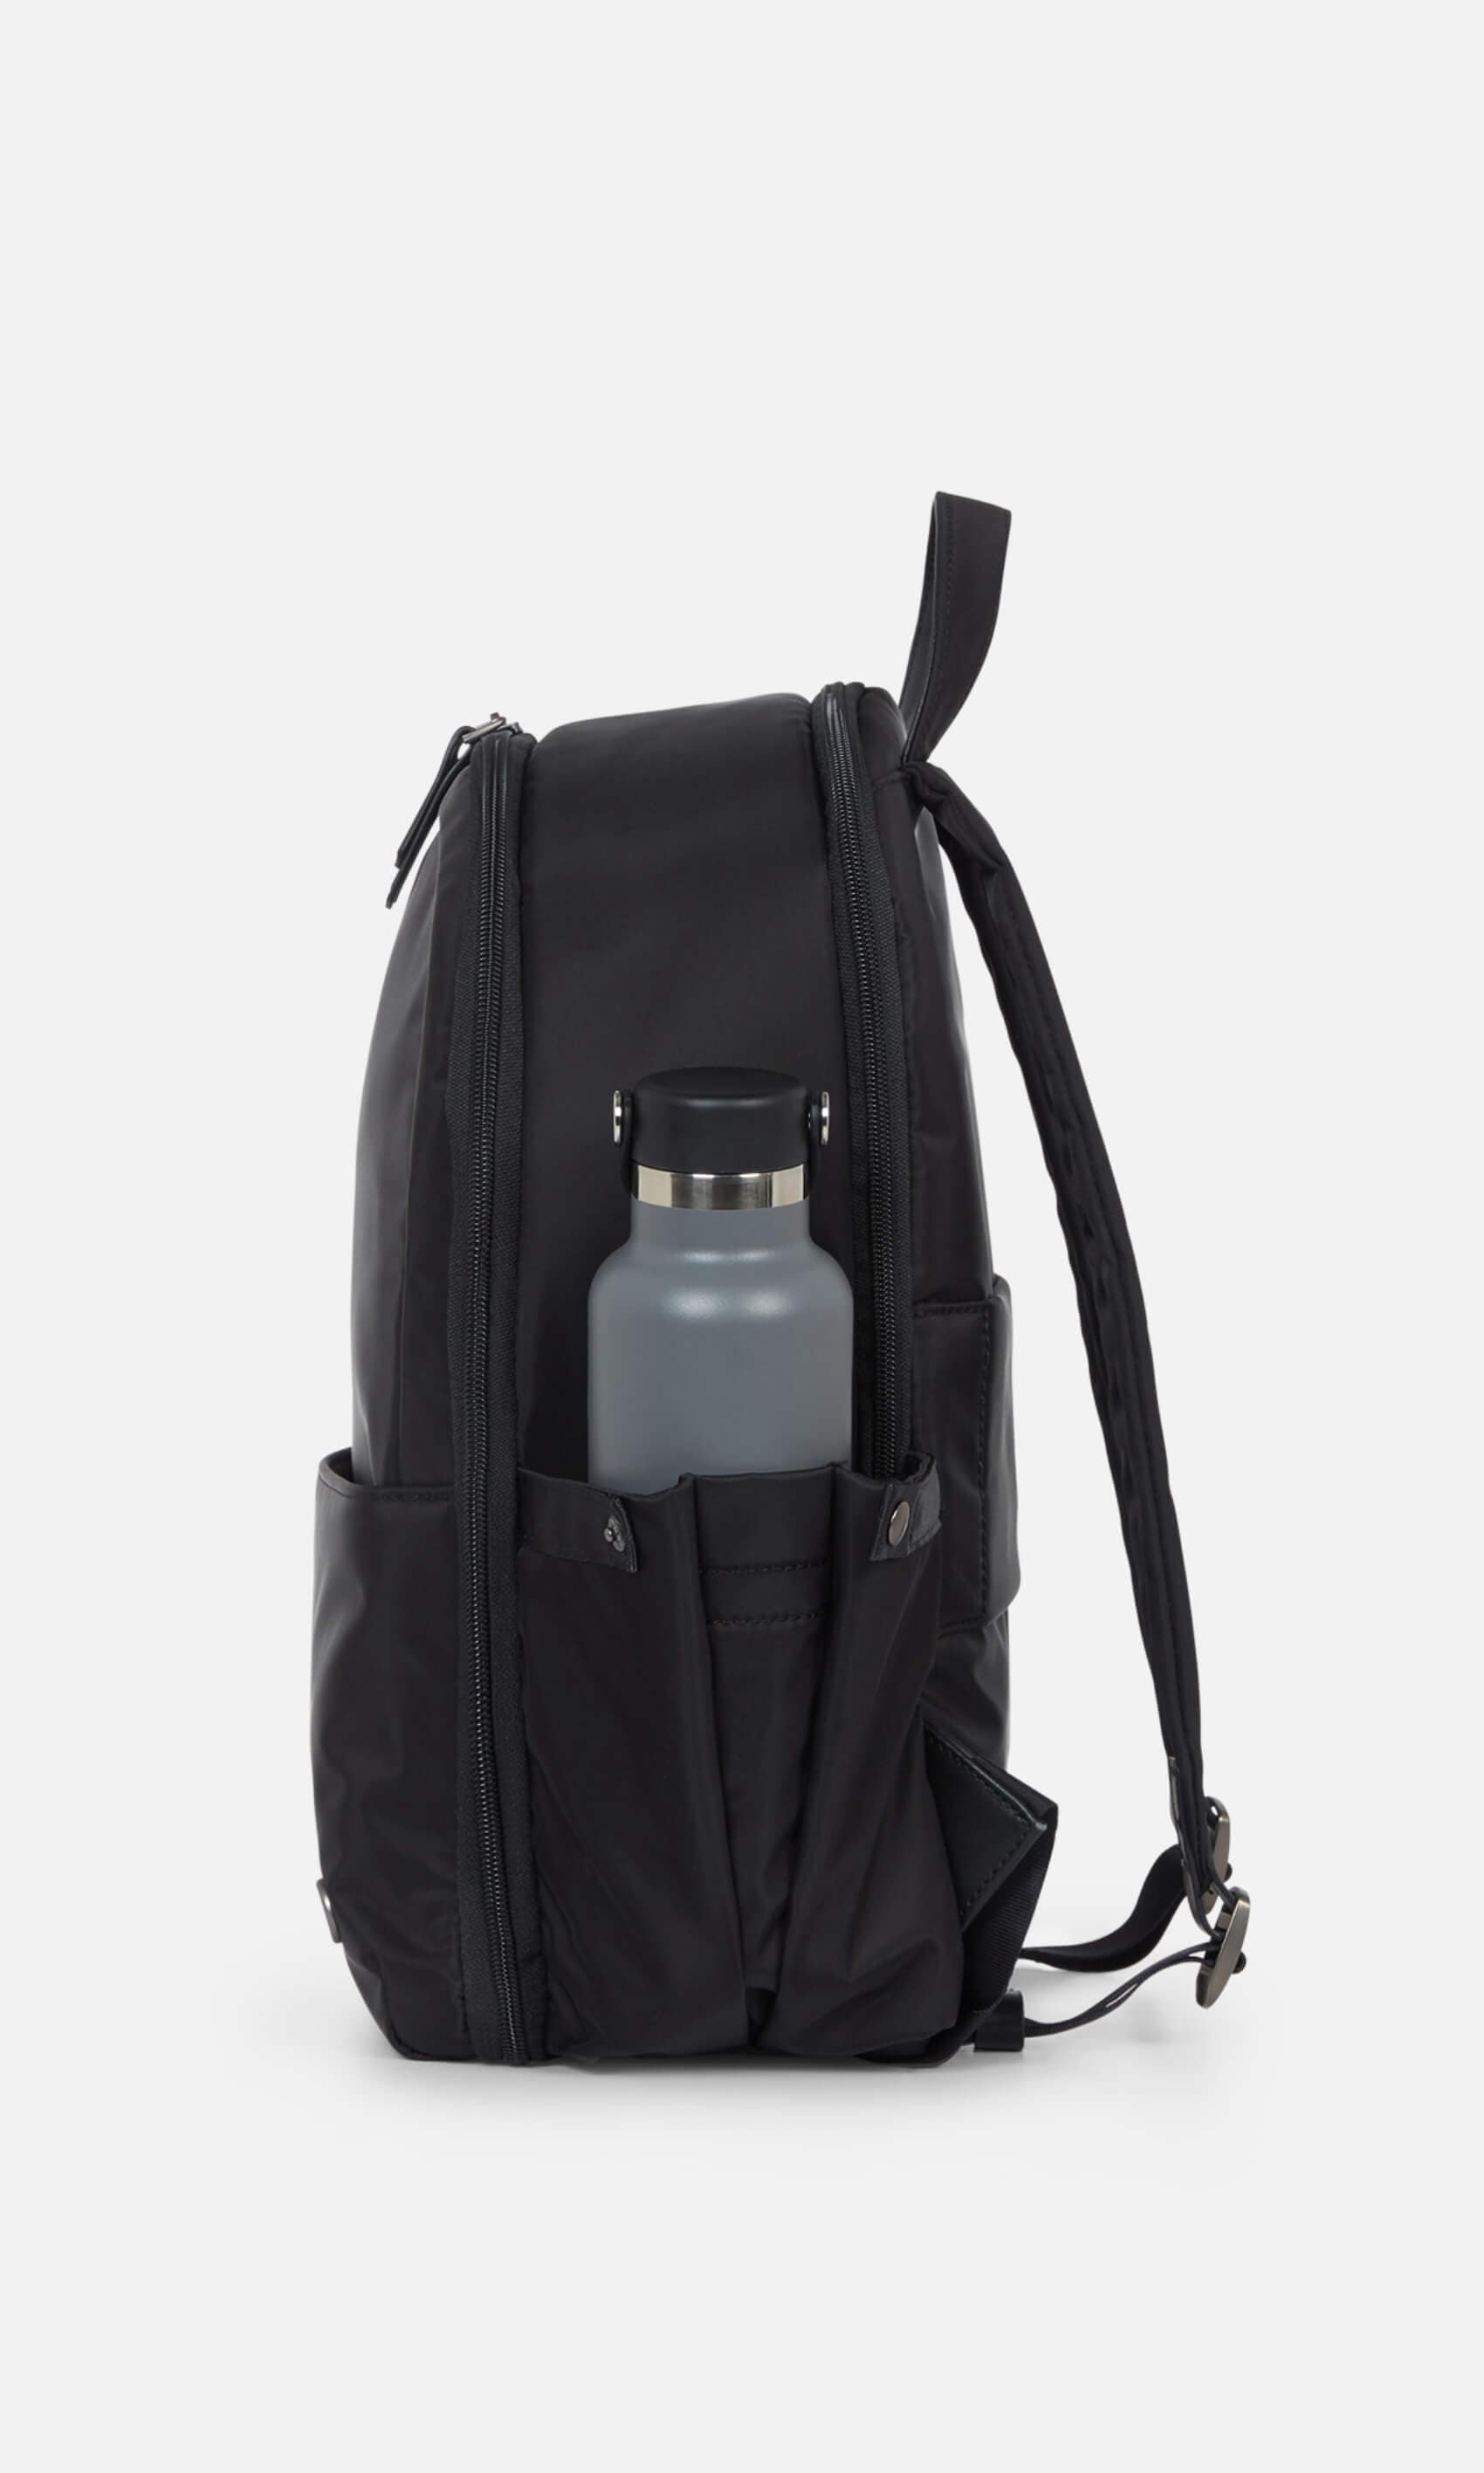 Antler Luggage -  Chelsea large backpack in black - Backpacks Chelsea Large Backpack Black | Travel & Lifestyle Bags | Antler UK